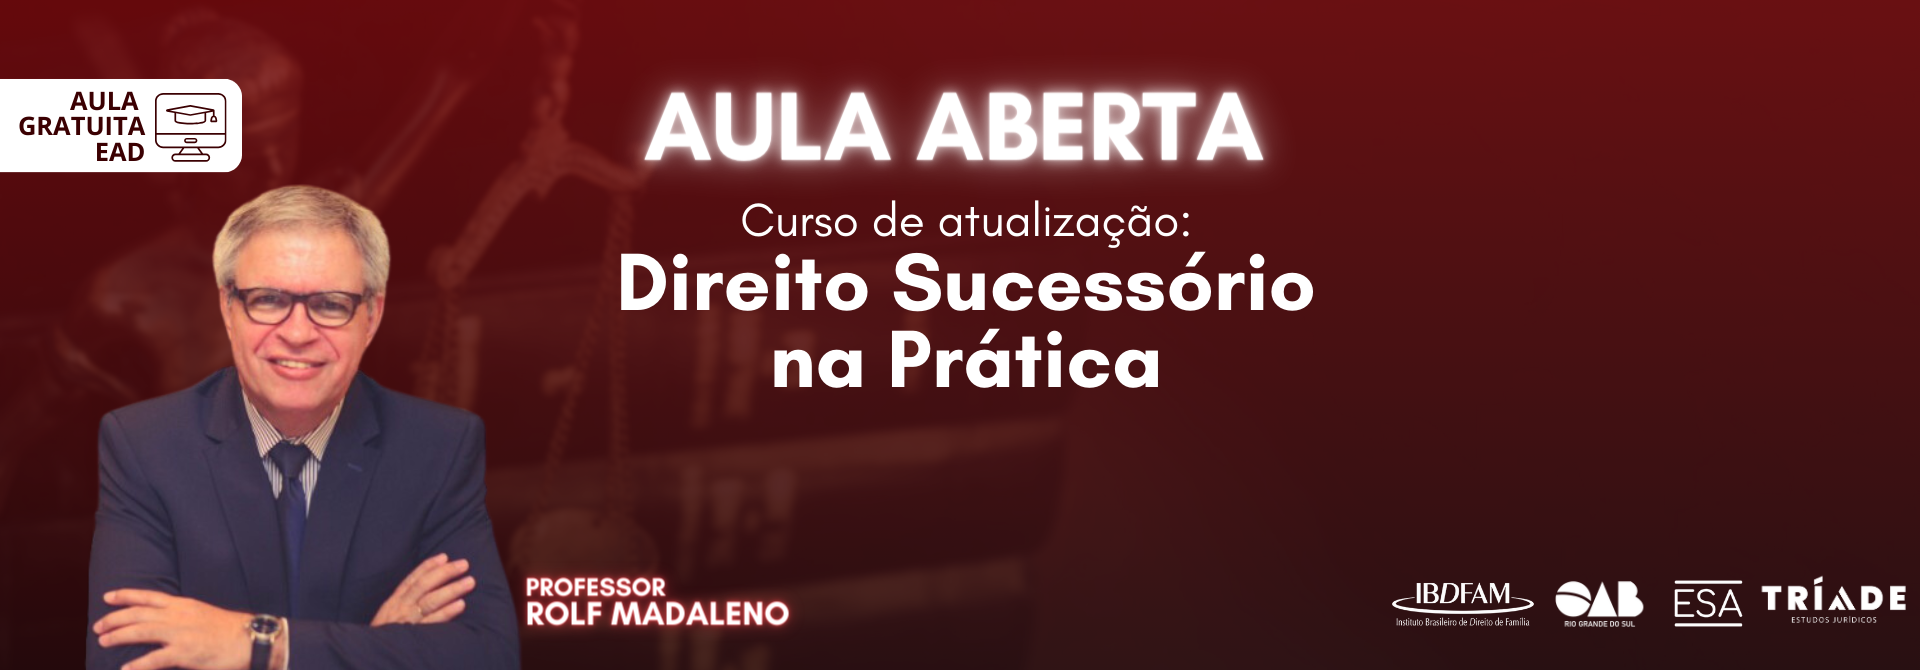 AULA ABERTA -  DIREITO SUCESSÓRIO NA PRÁTICA - SITE